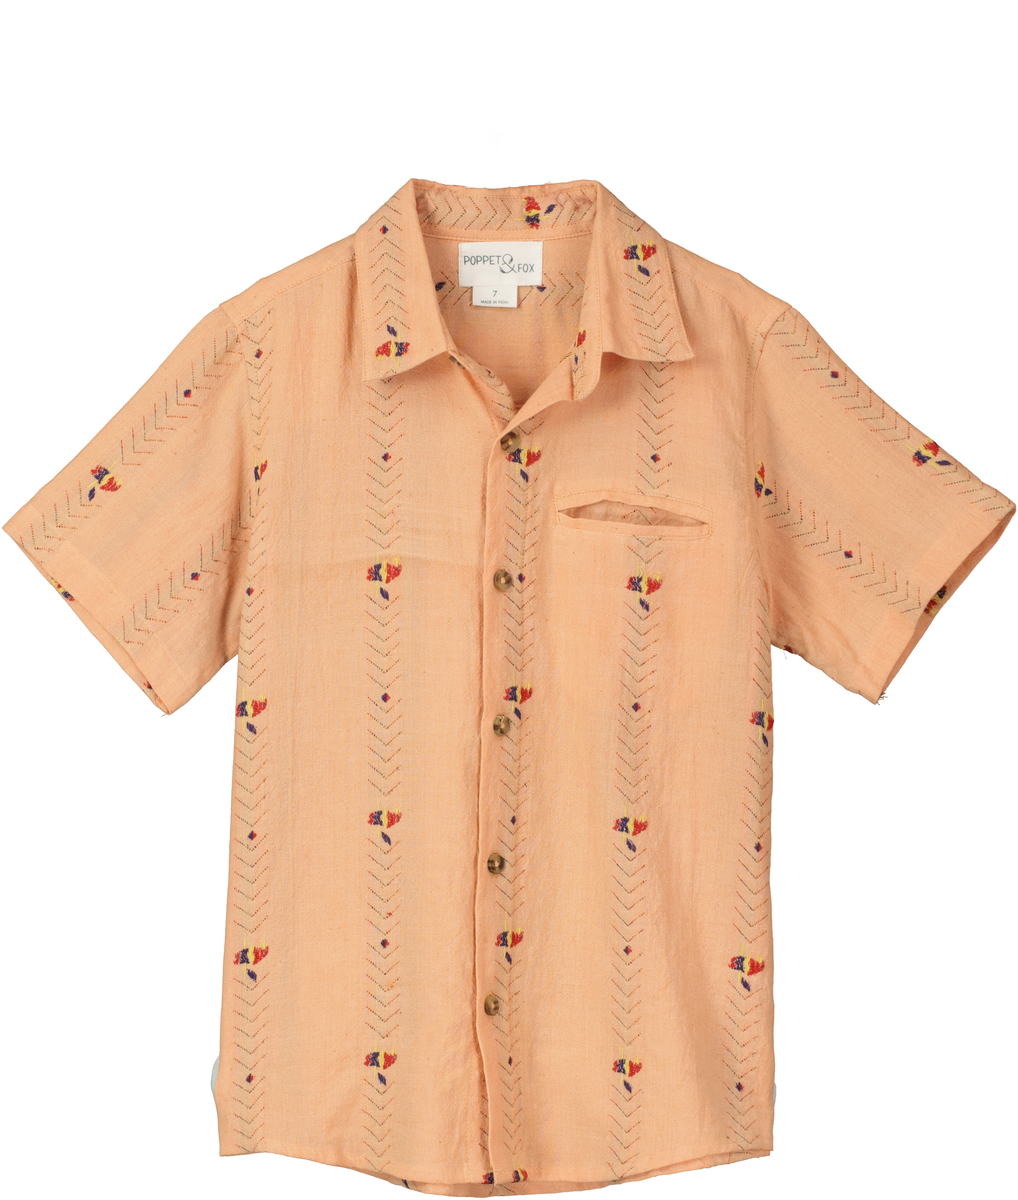 Smart Short-Sleeved Shirt- South Beach